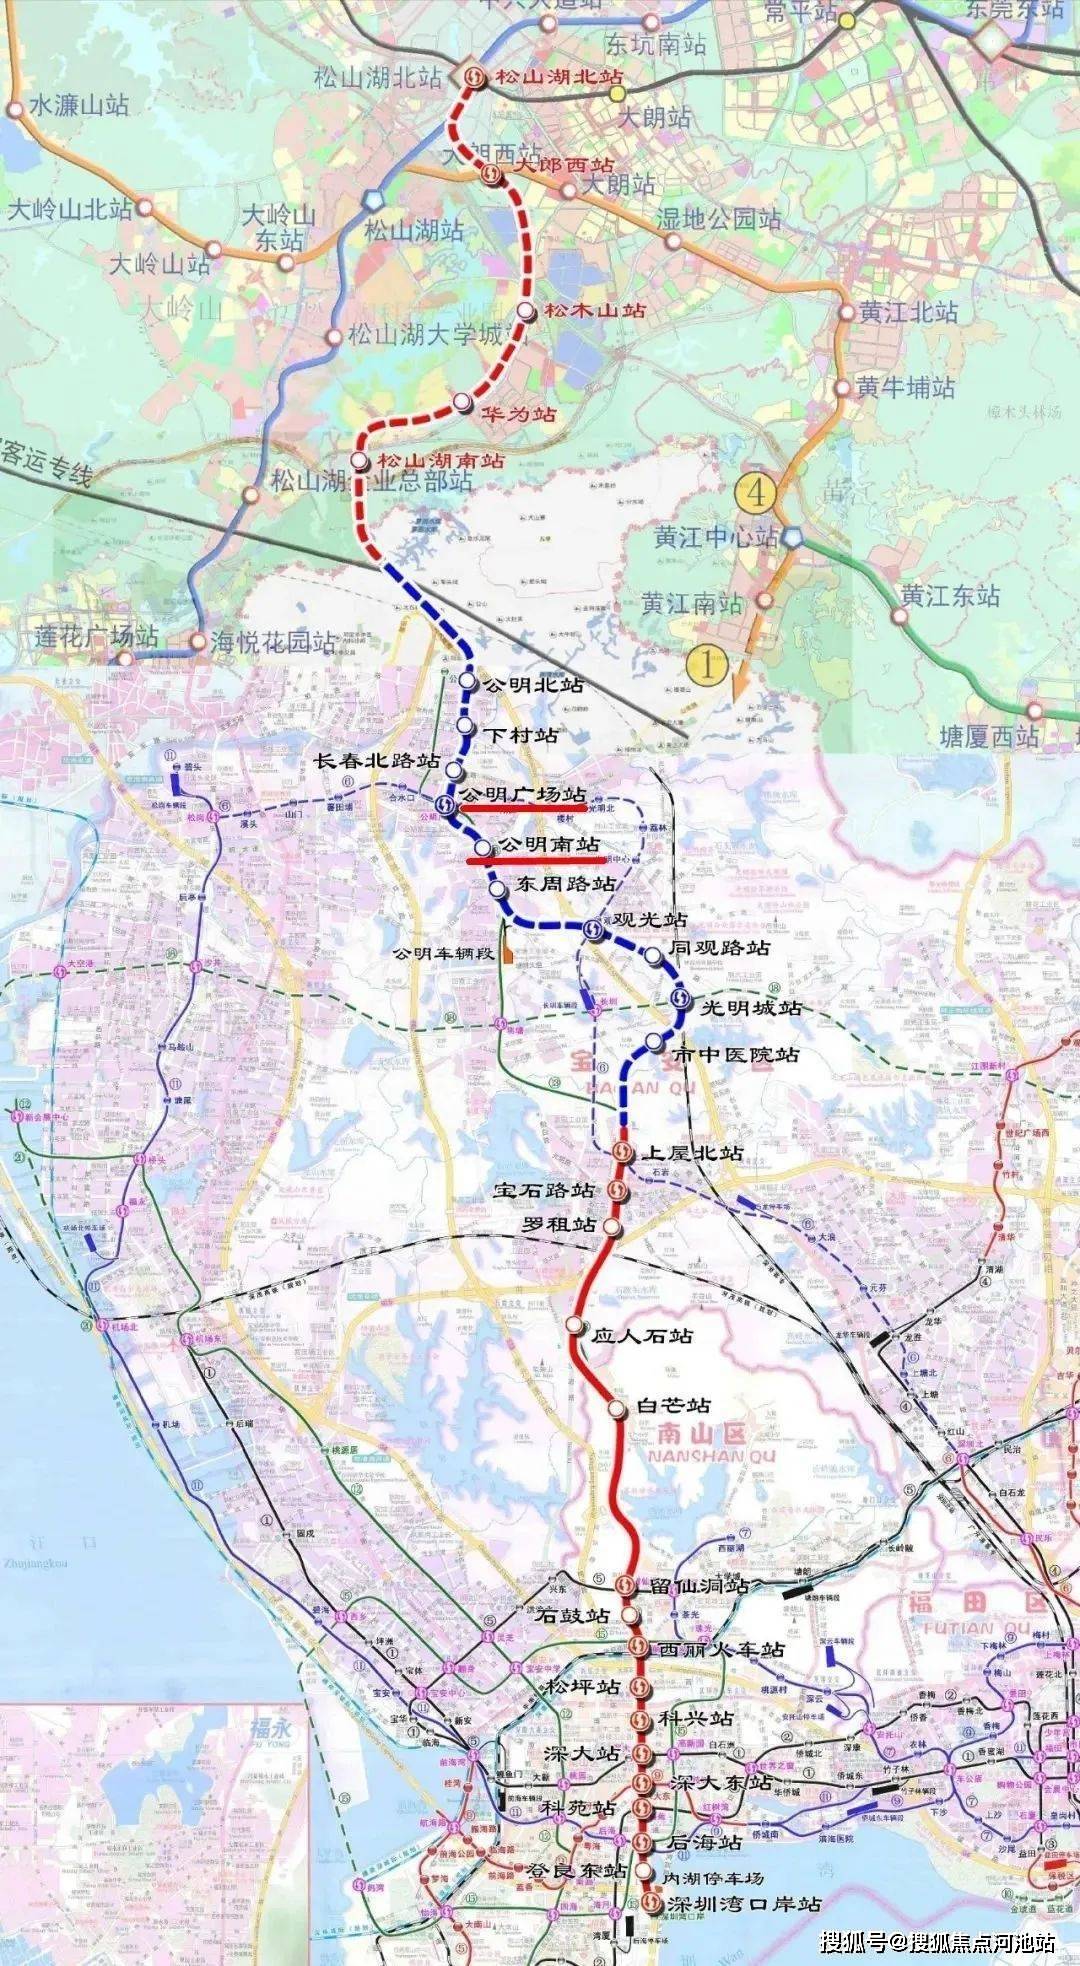 深圳地铁13号线,从深圳湾口岸向北到达公明,未来会与东莞5号线连接